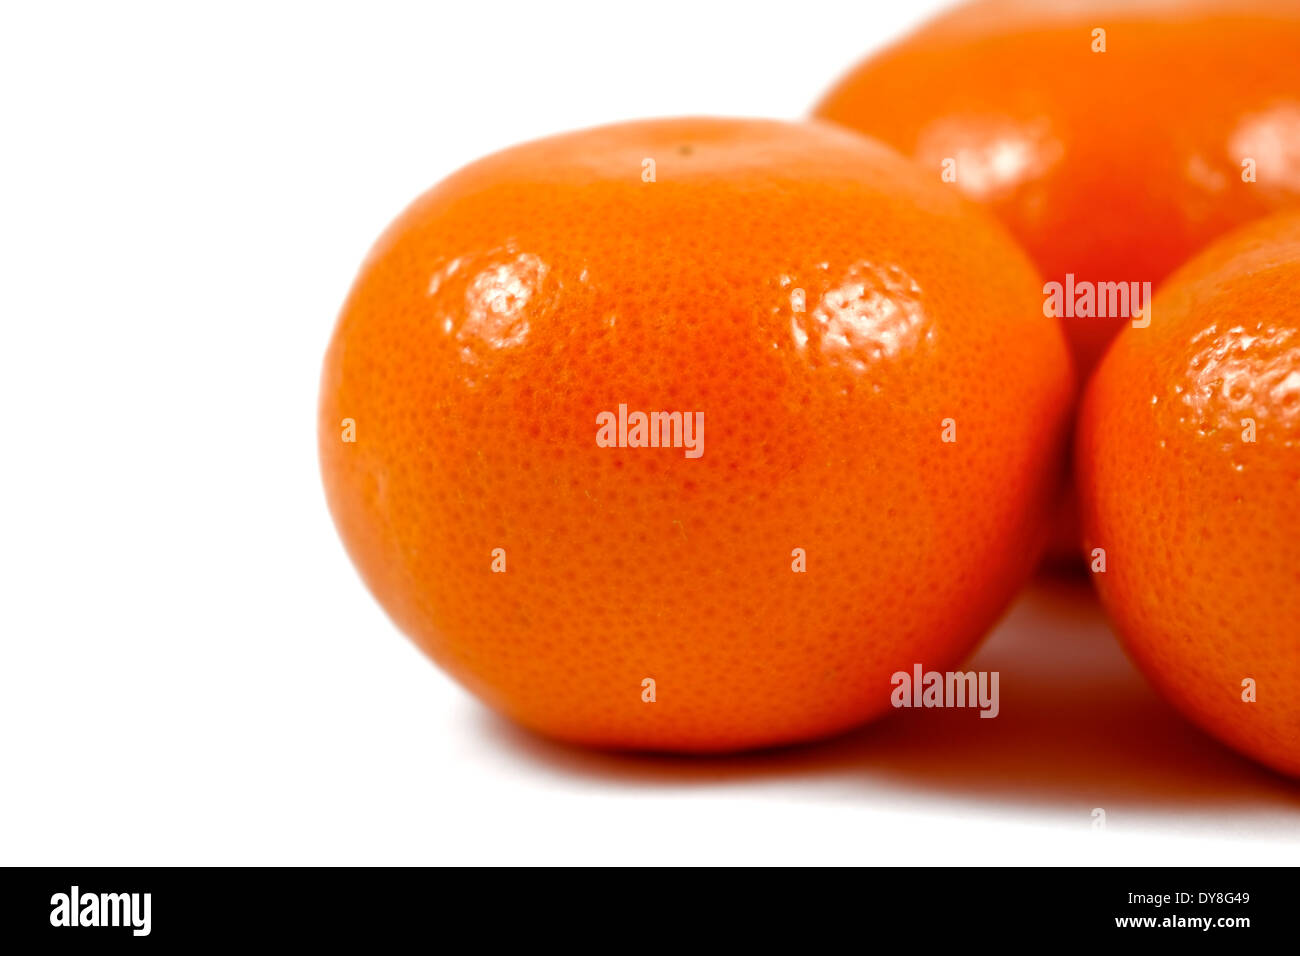 Satsuma oranges white background studio image Stock Photo